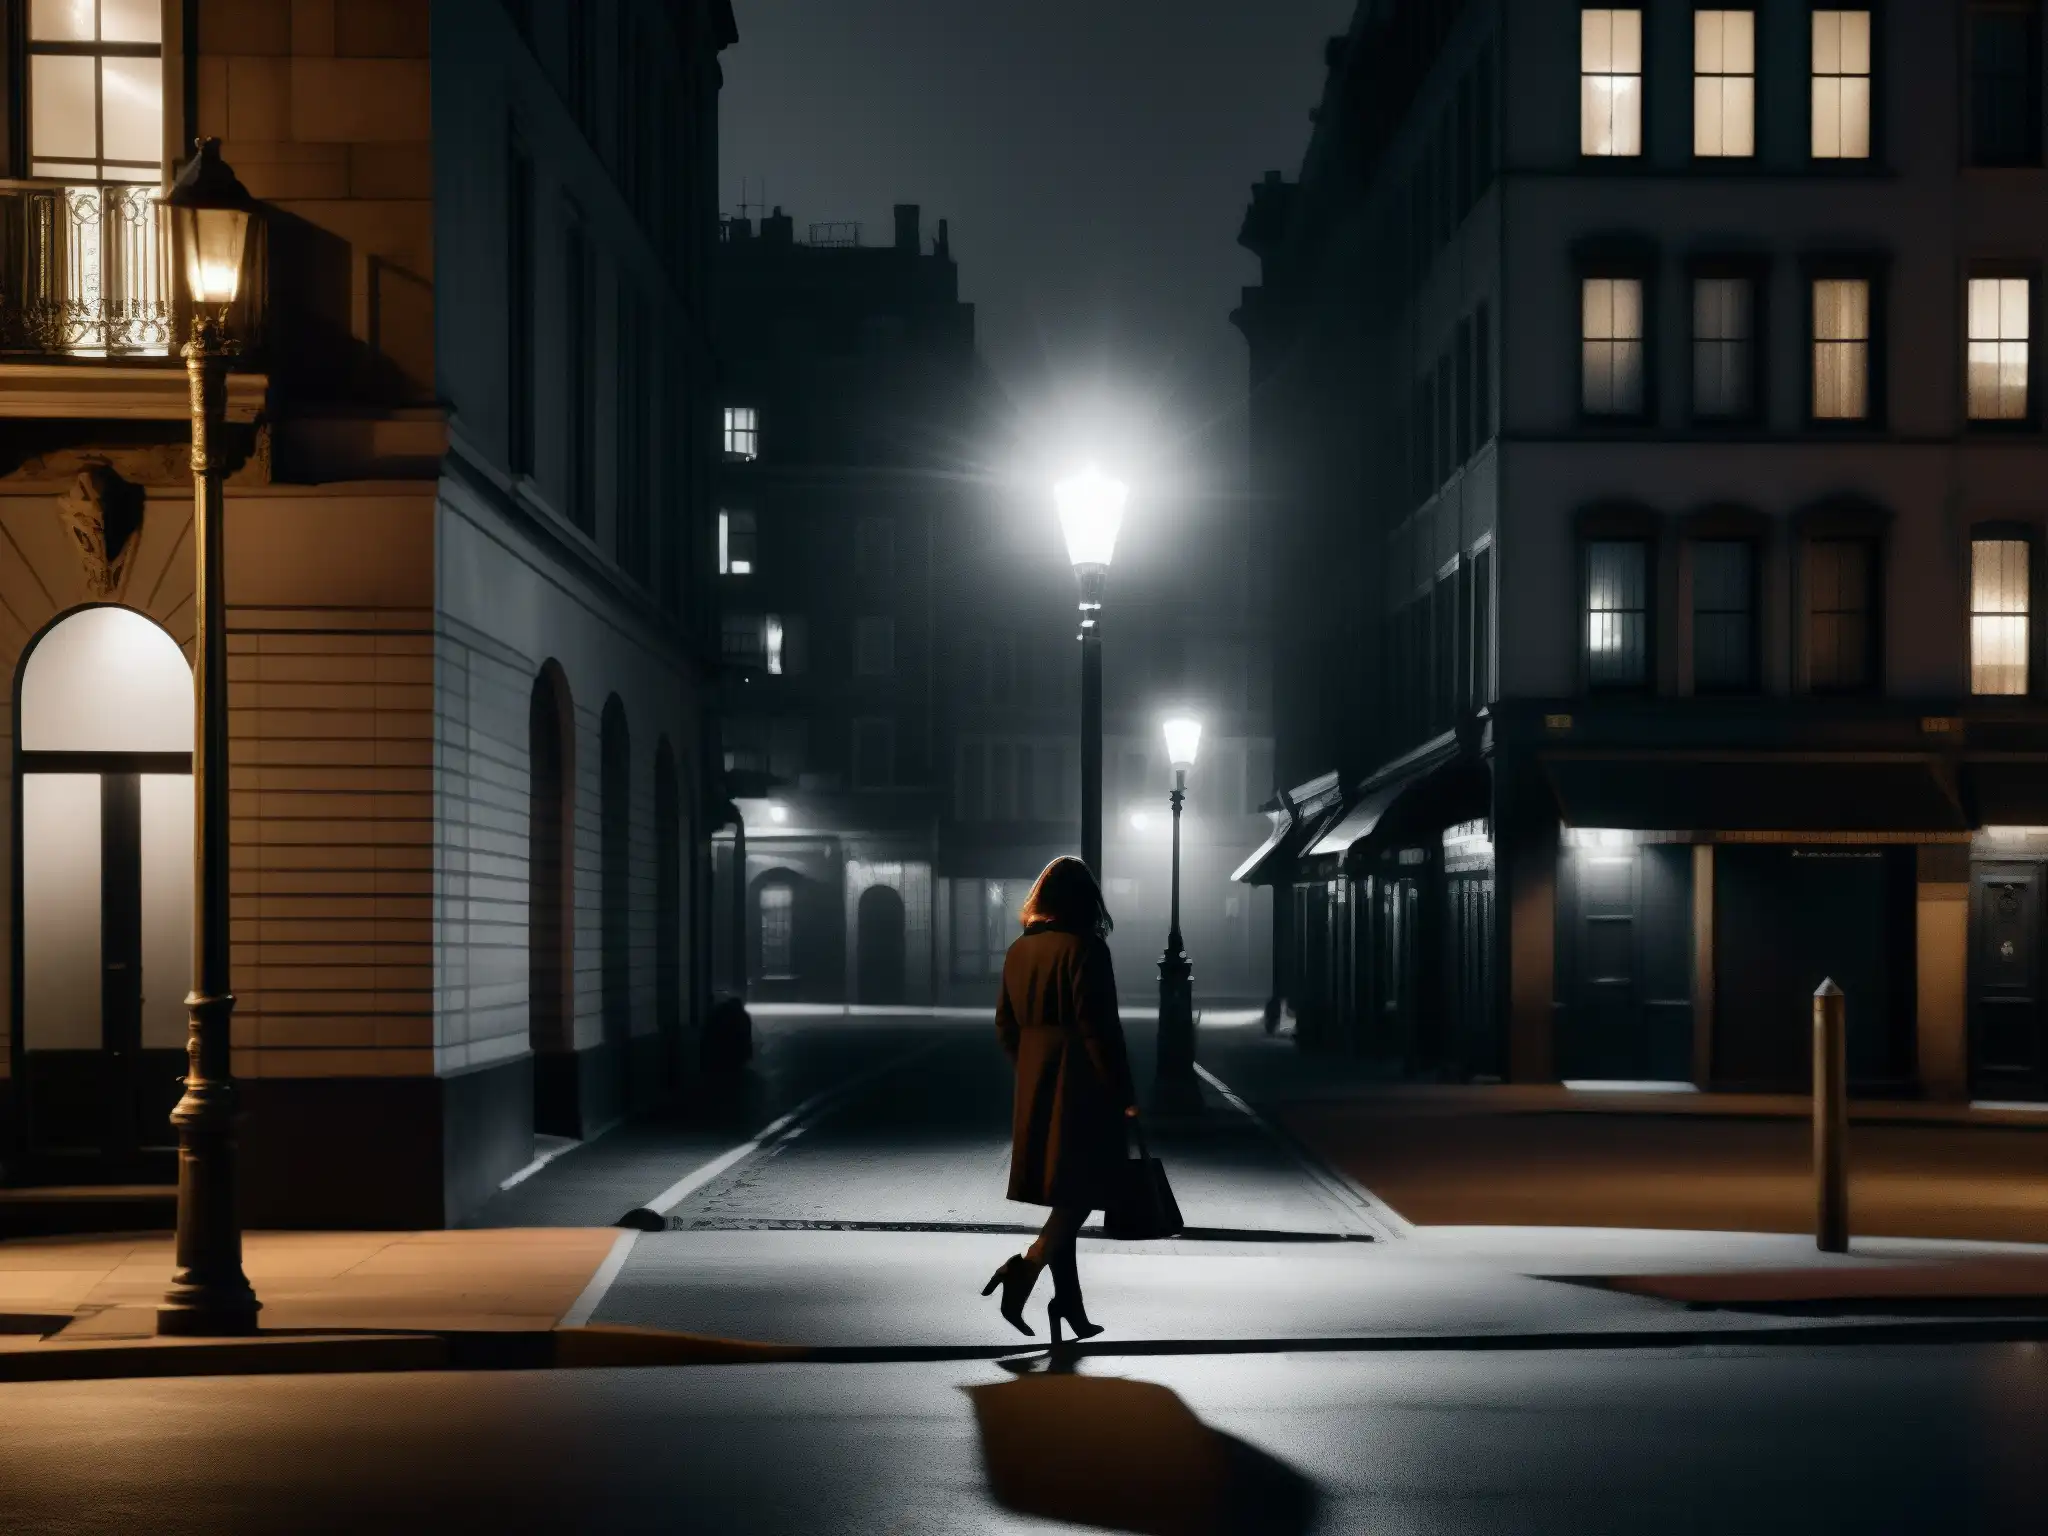 Una ciudad desolada de noche con una figura solitaria bajo la luz parpadeante de una farola